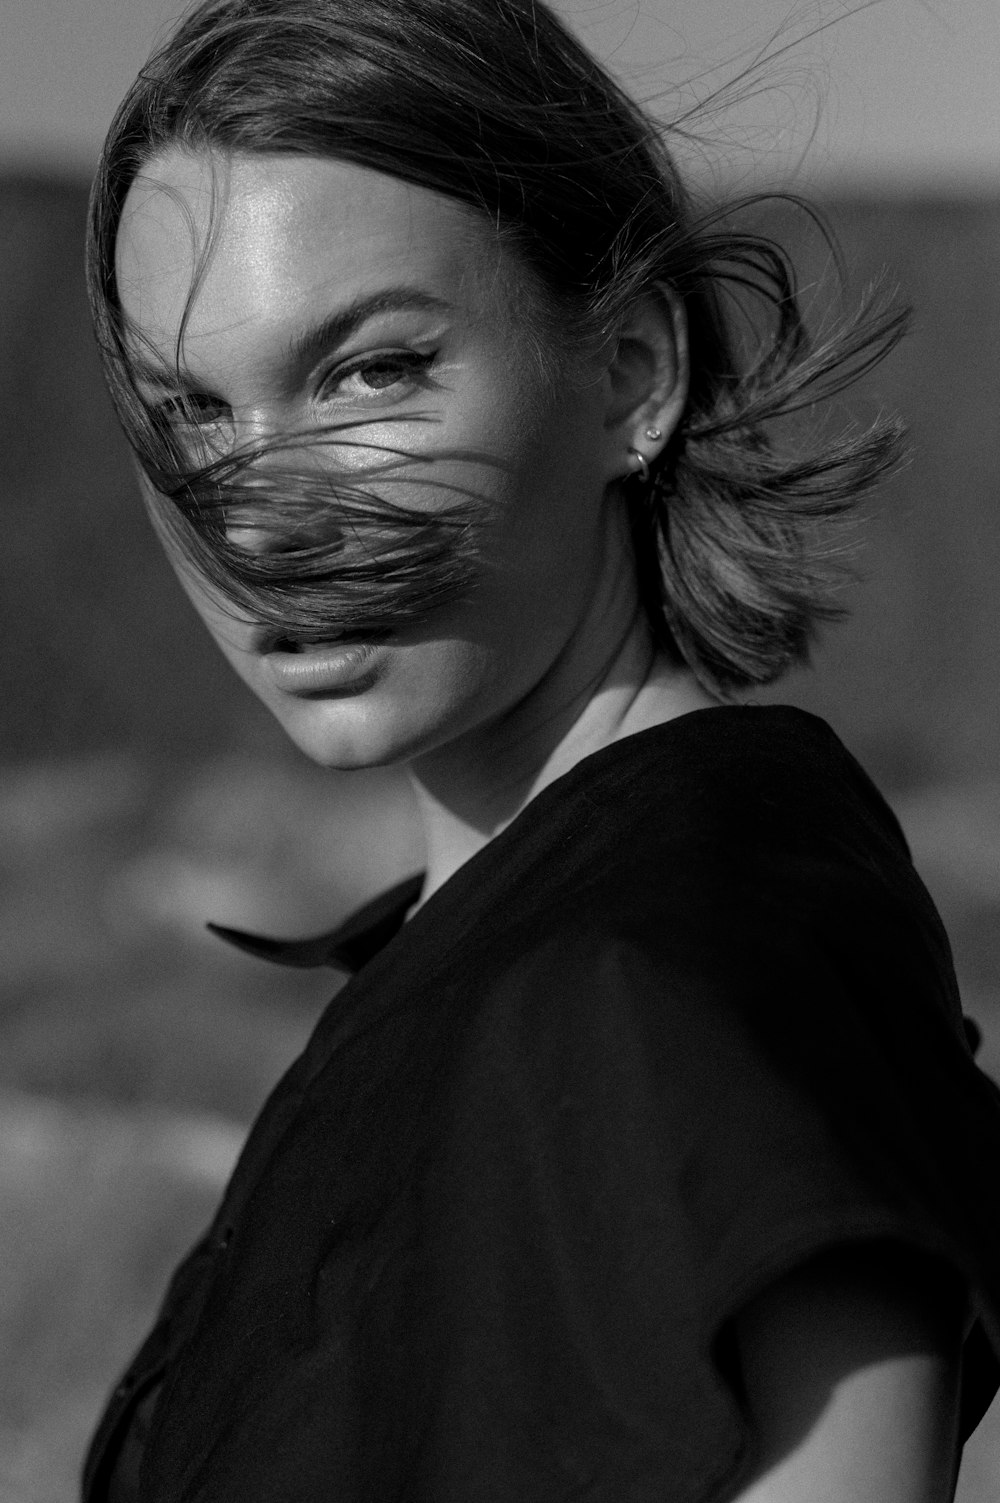 Femme en chemise noire en niveaux de gris photographie